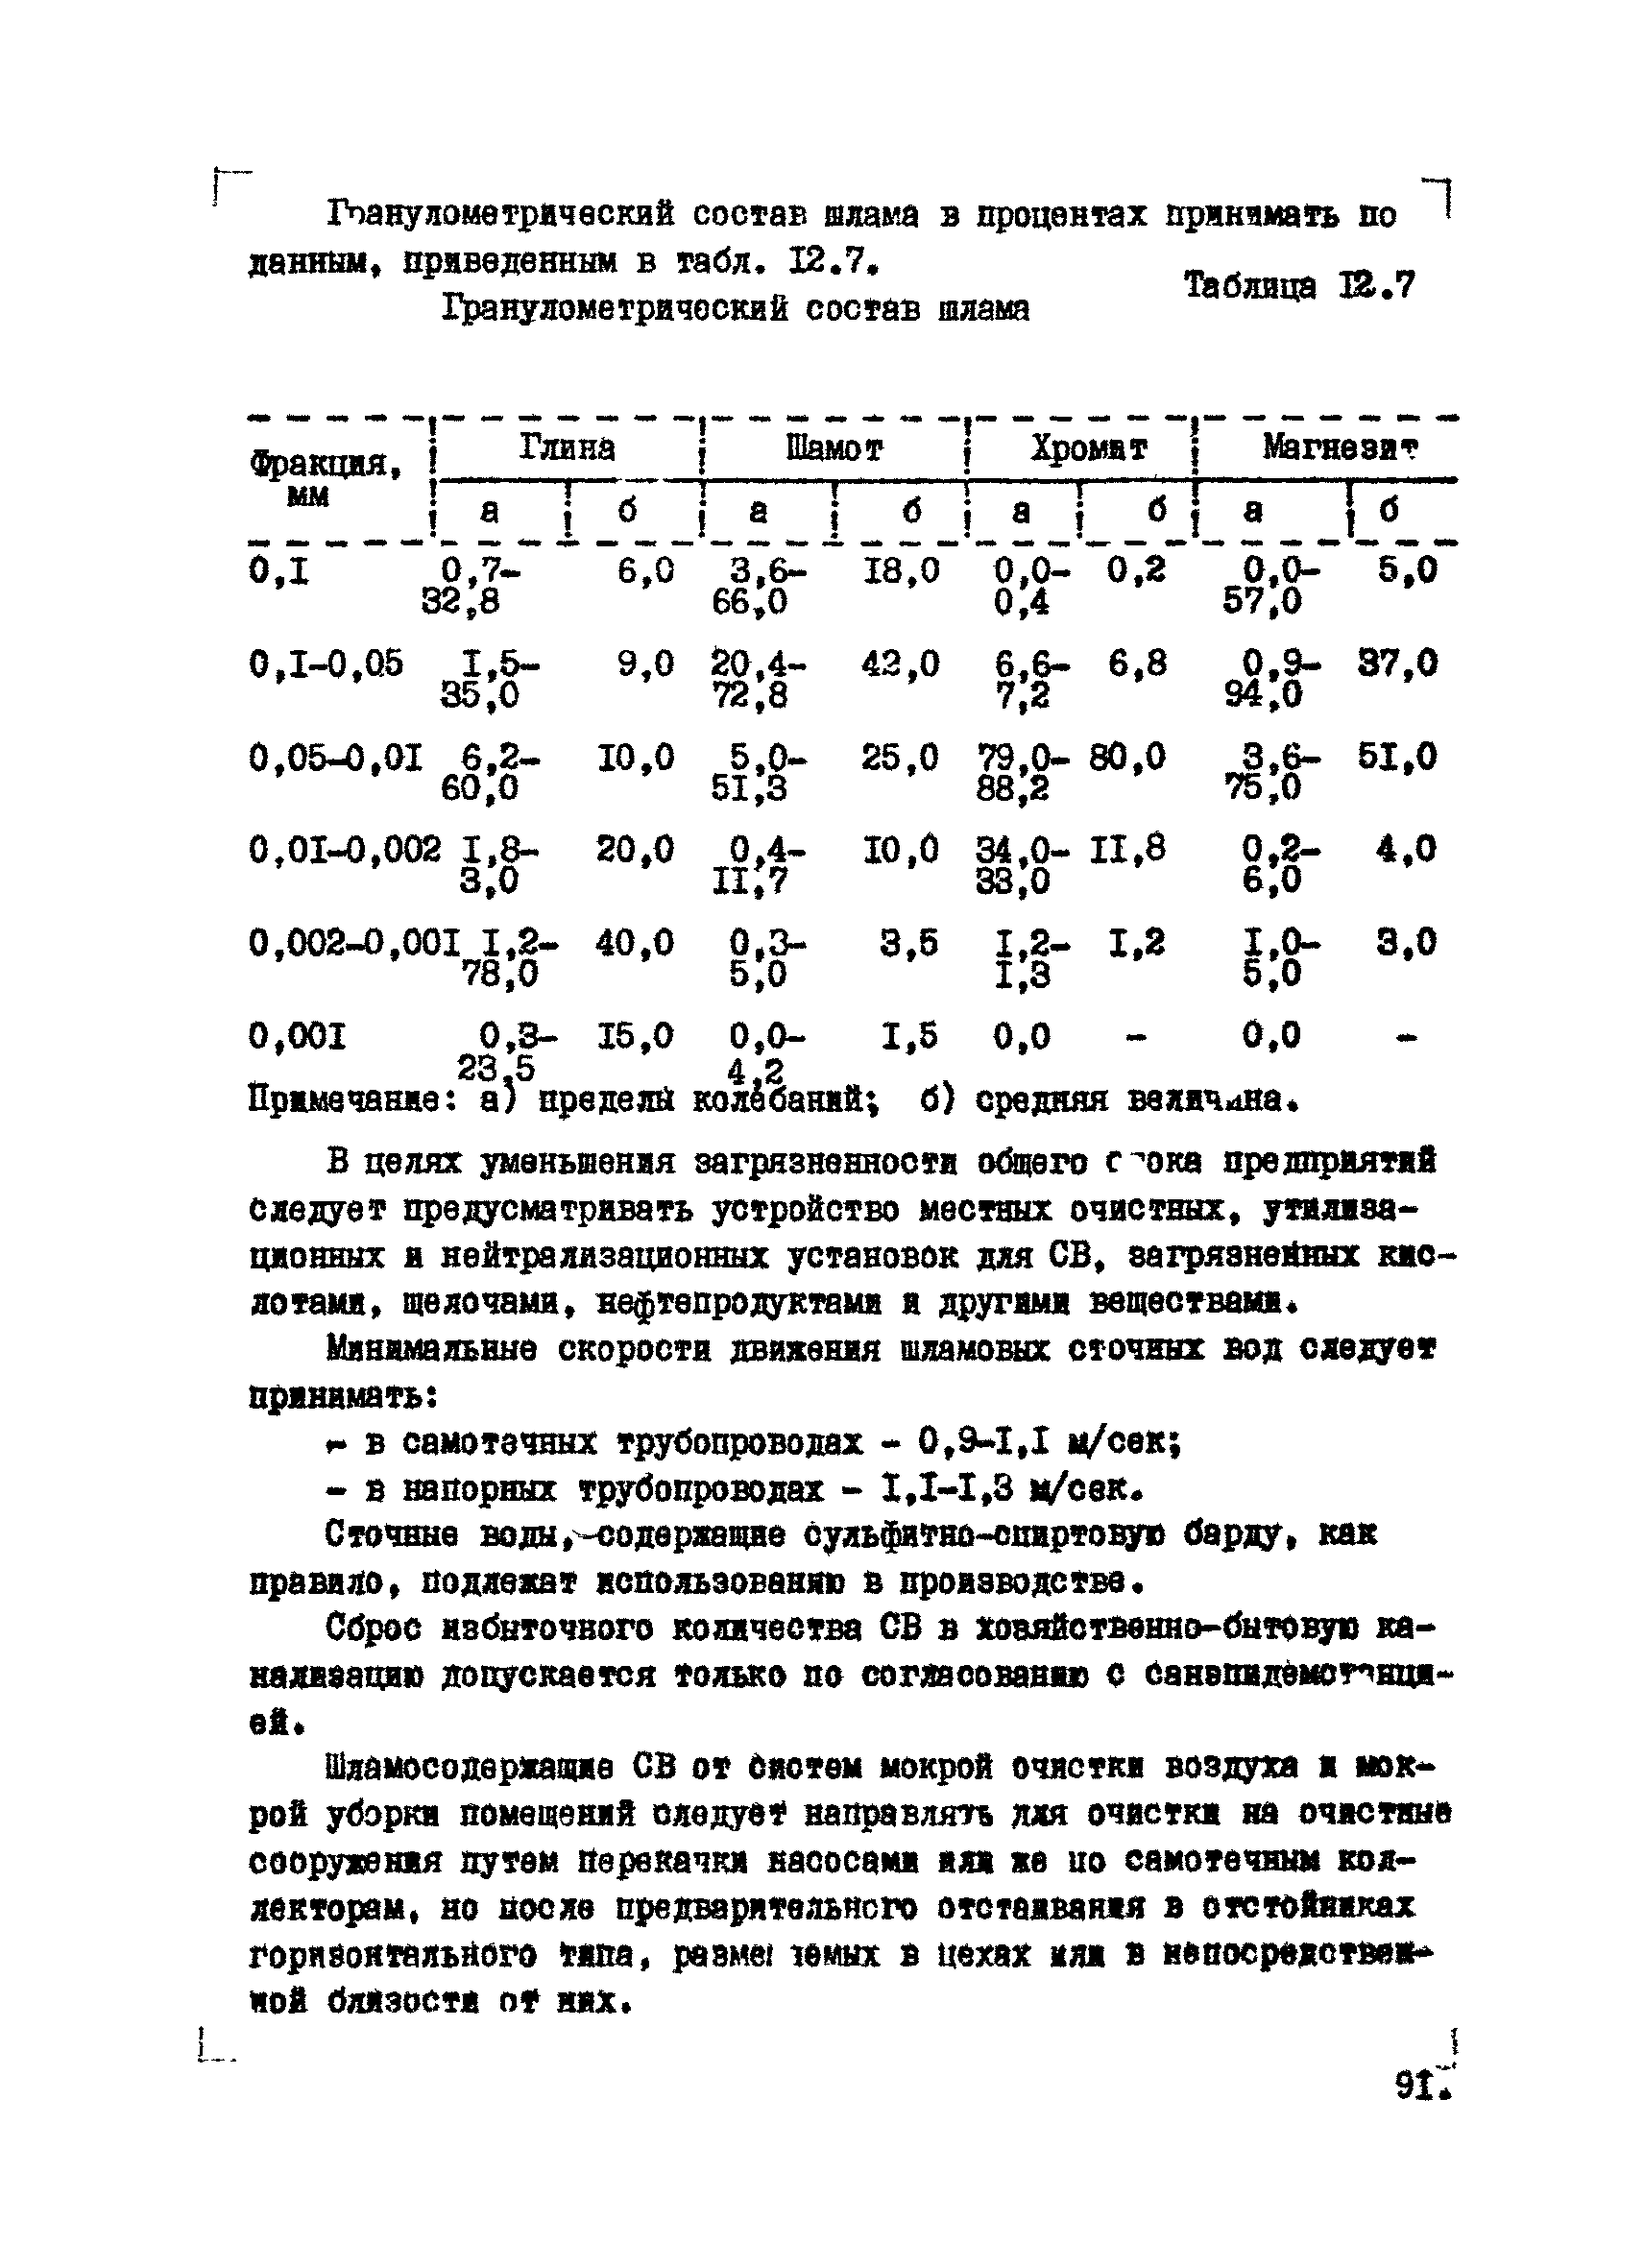 ВНТМ/МЧМ СССР 1-37-80